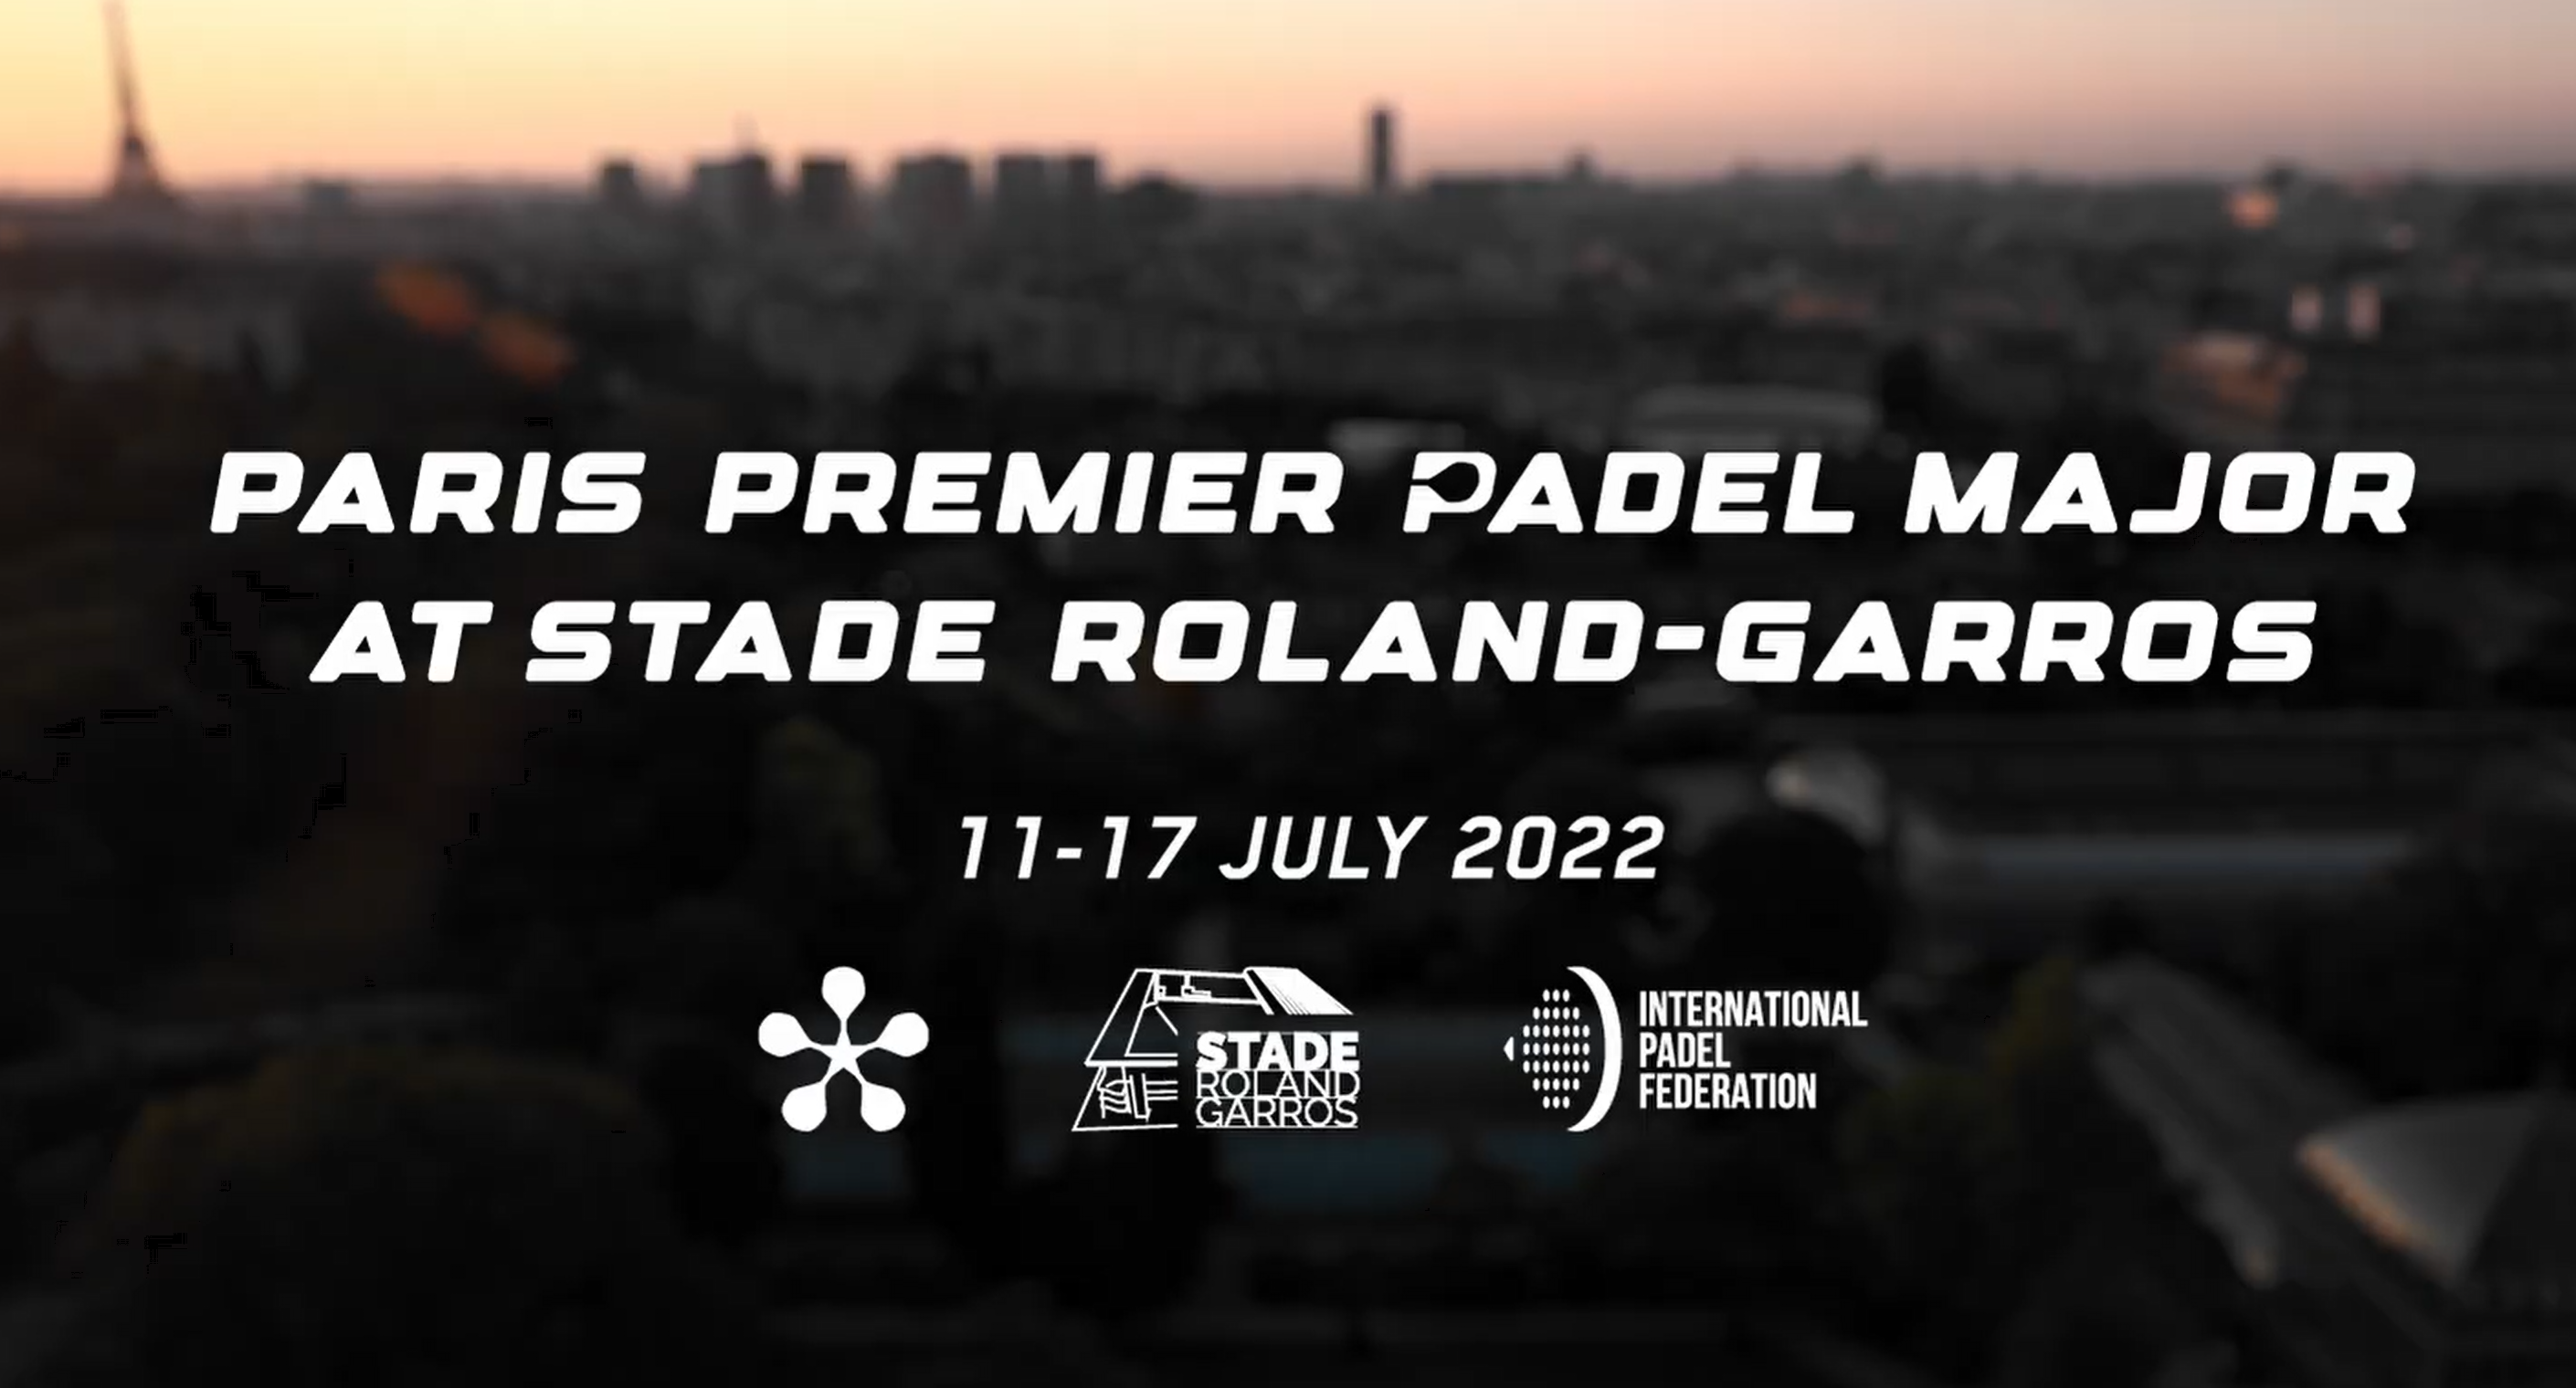 例外： Paris Premier Padel Major 11 年 17 月 2022 日至 XNUMX 日在罗兰加洛斯体育场